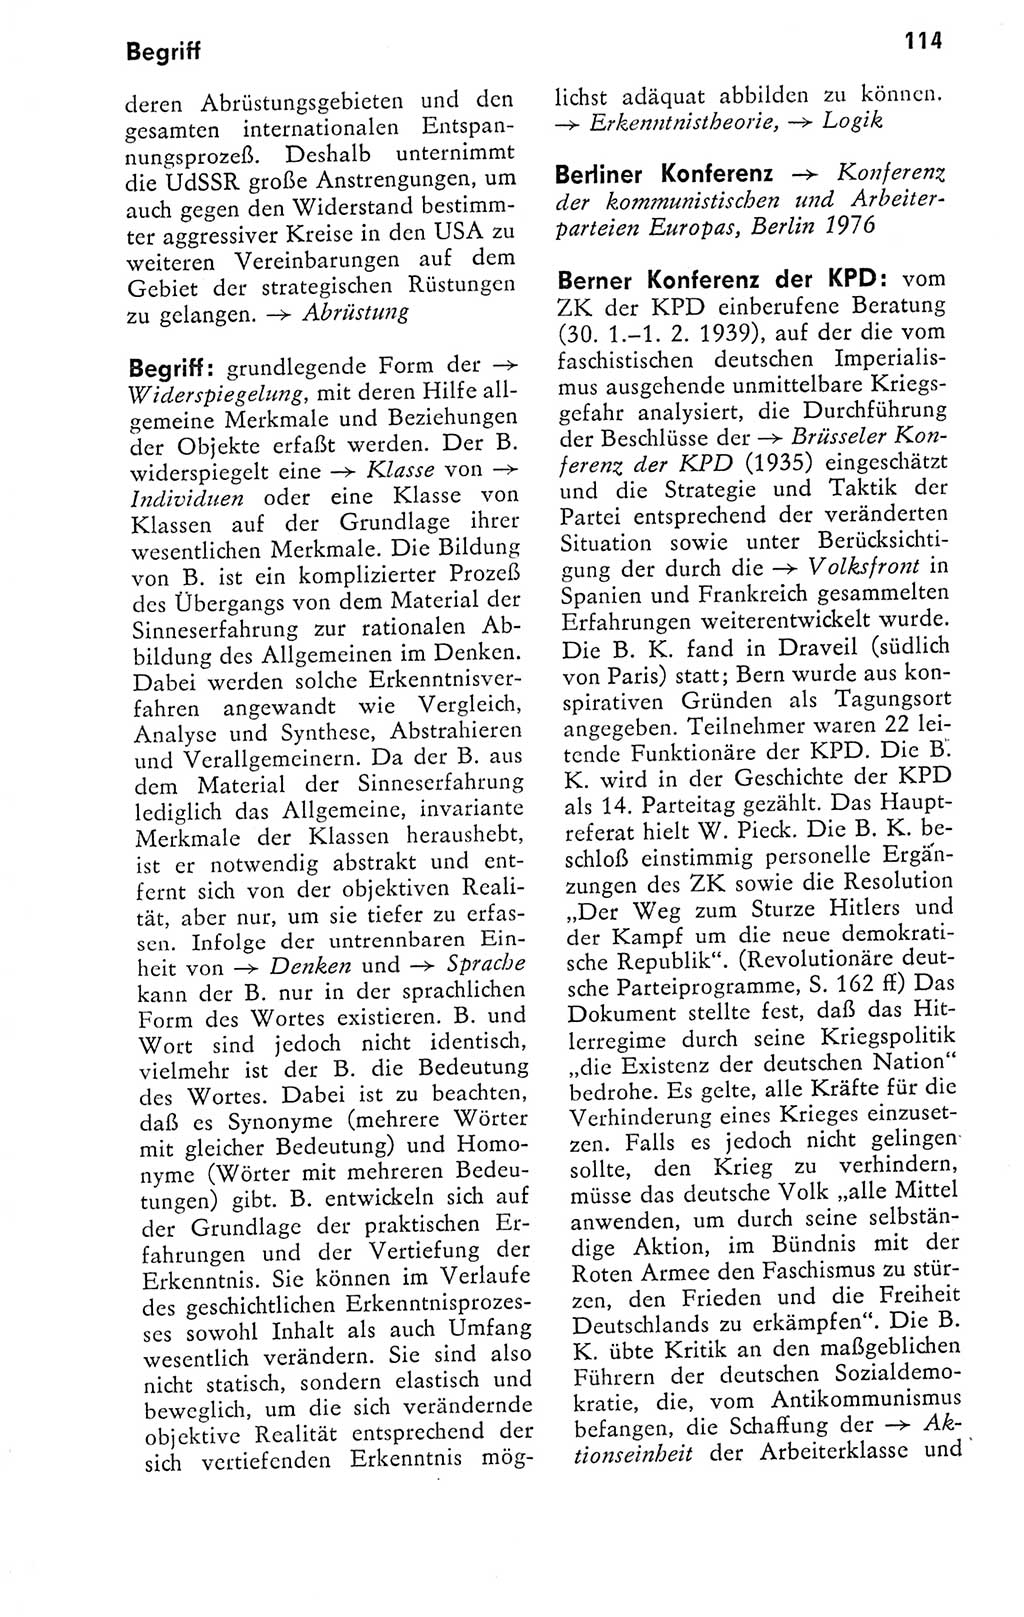 Kleines politisches Wörterbuch [Deutsche Demokratische Republik (DDR)] 1978, Seite 114 (Kl. pol. Wb. DDR 1978, S. 114)